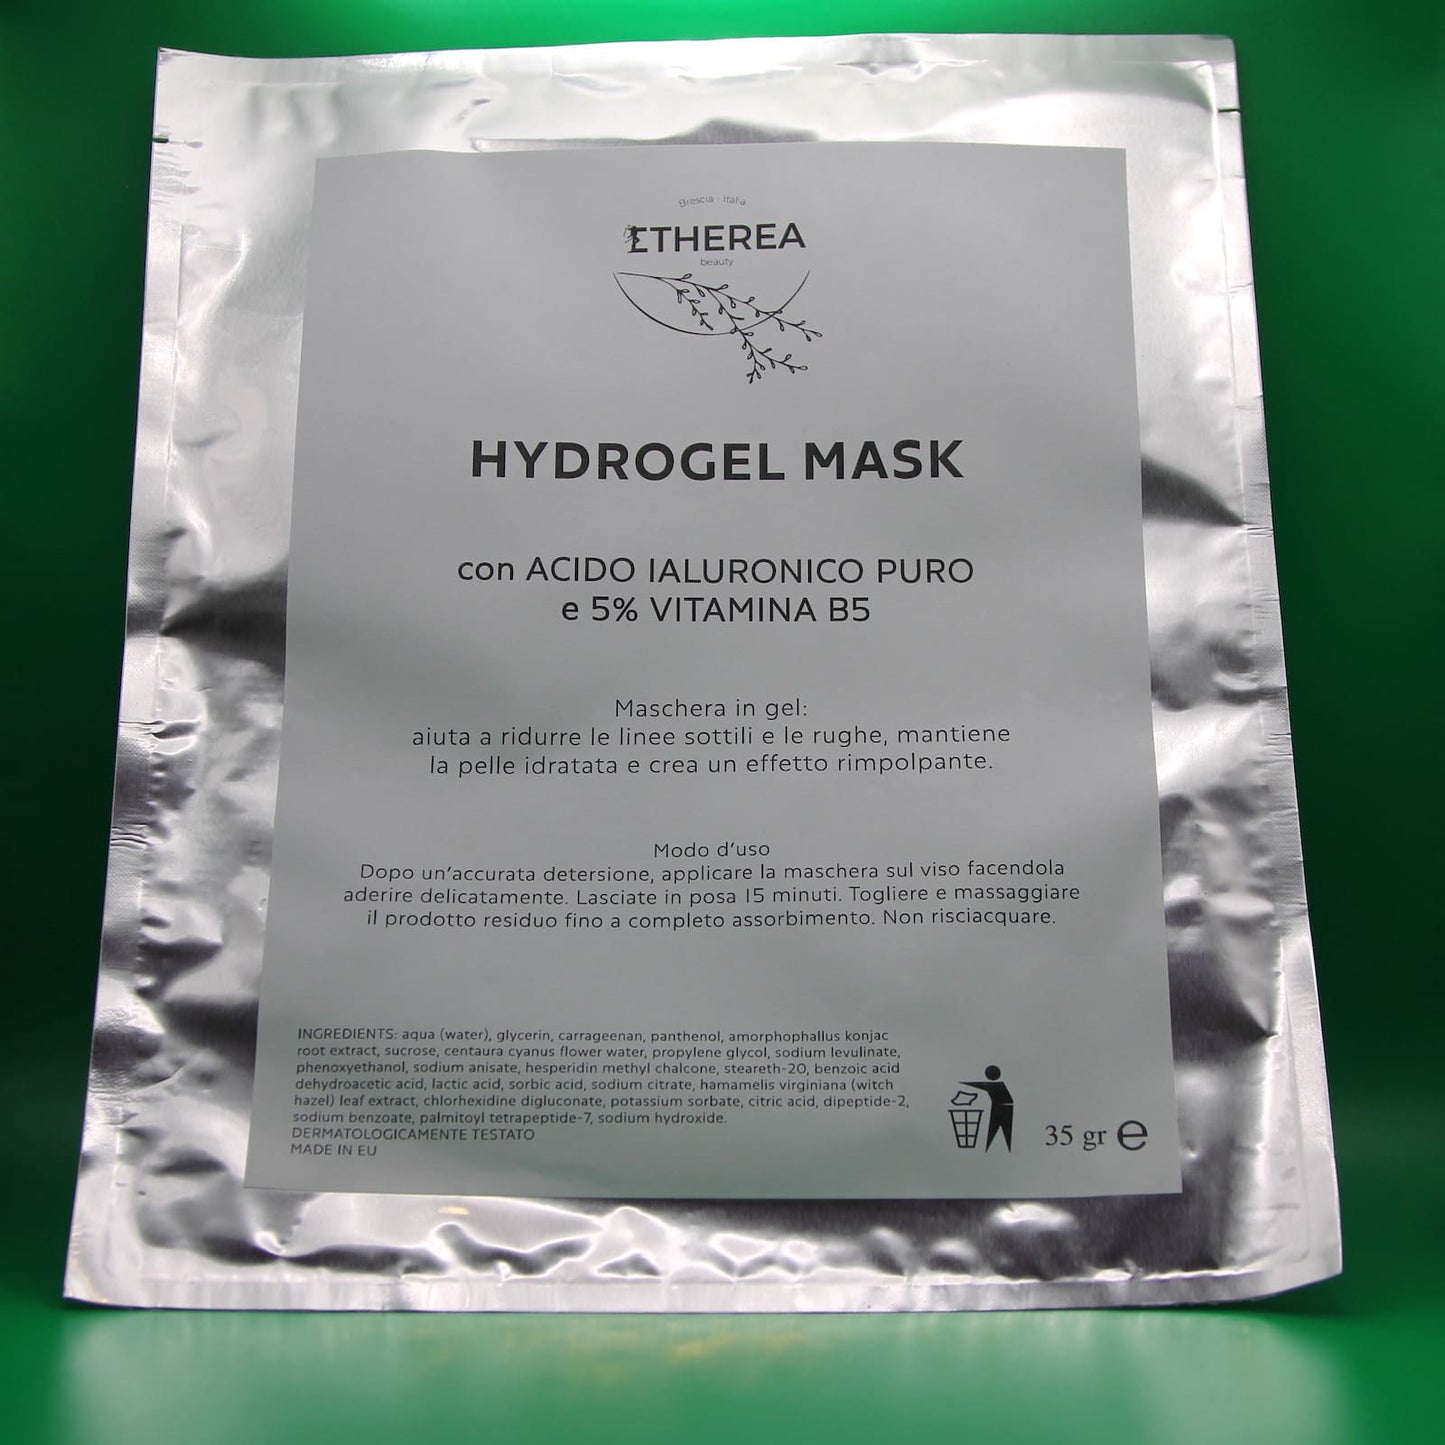 Etherea Beauty - Hydrogel Mask